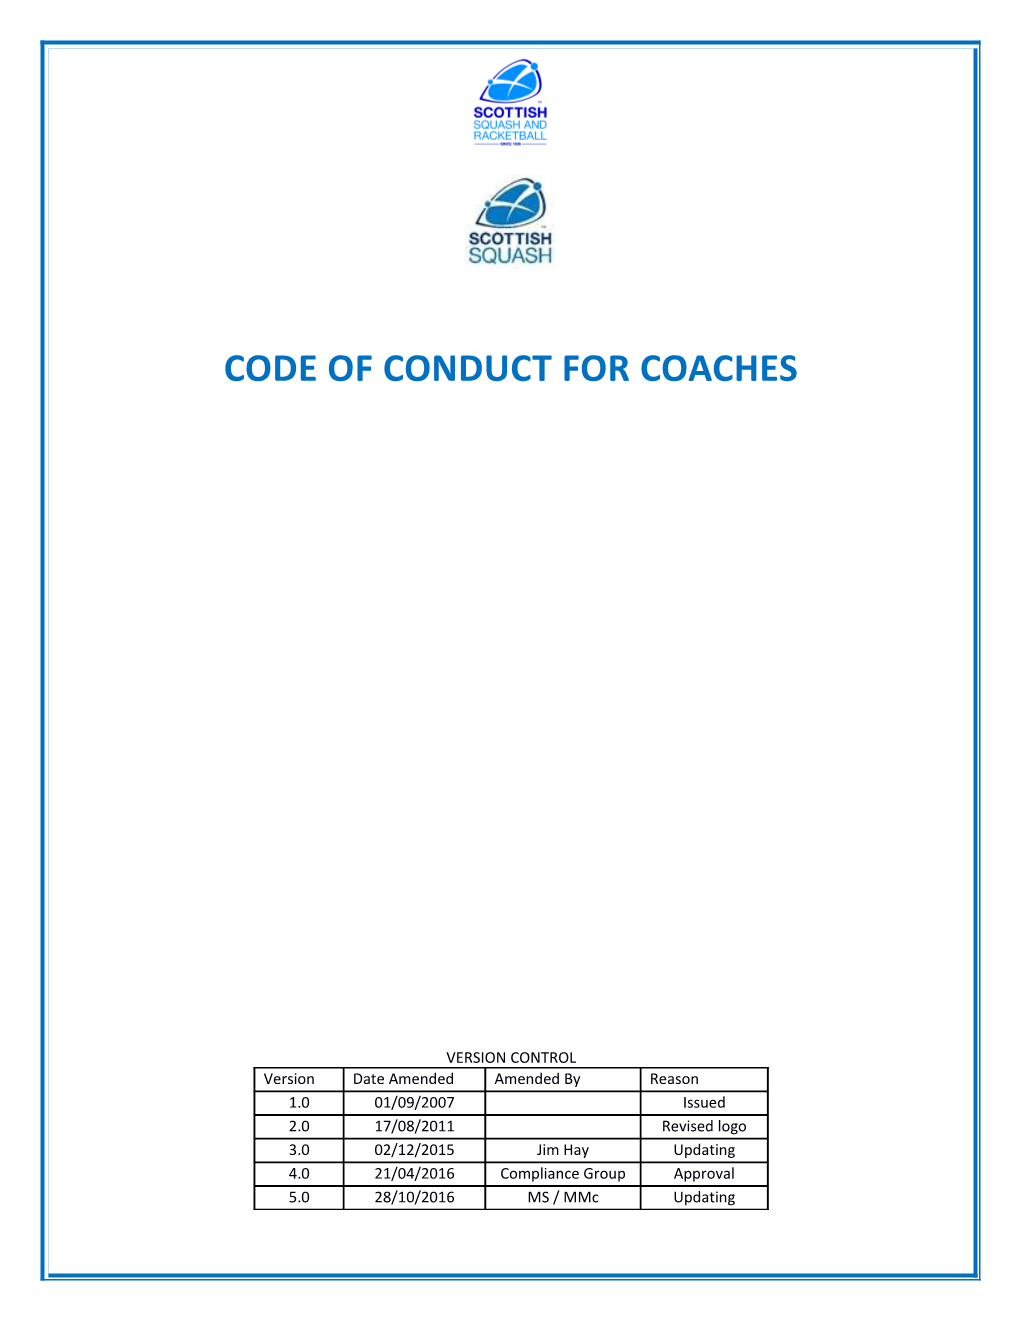 Ukcc Certificate in Coaching Squash